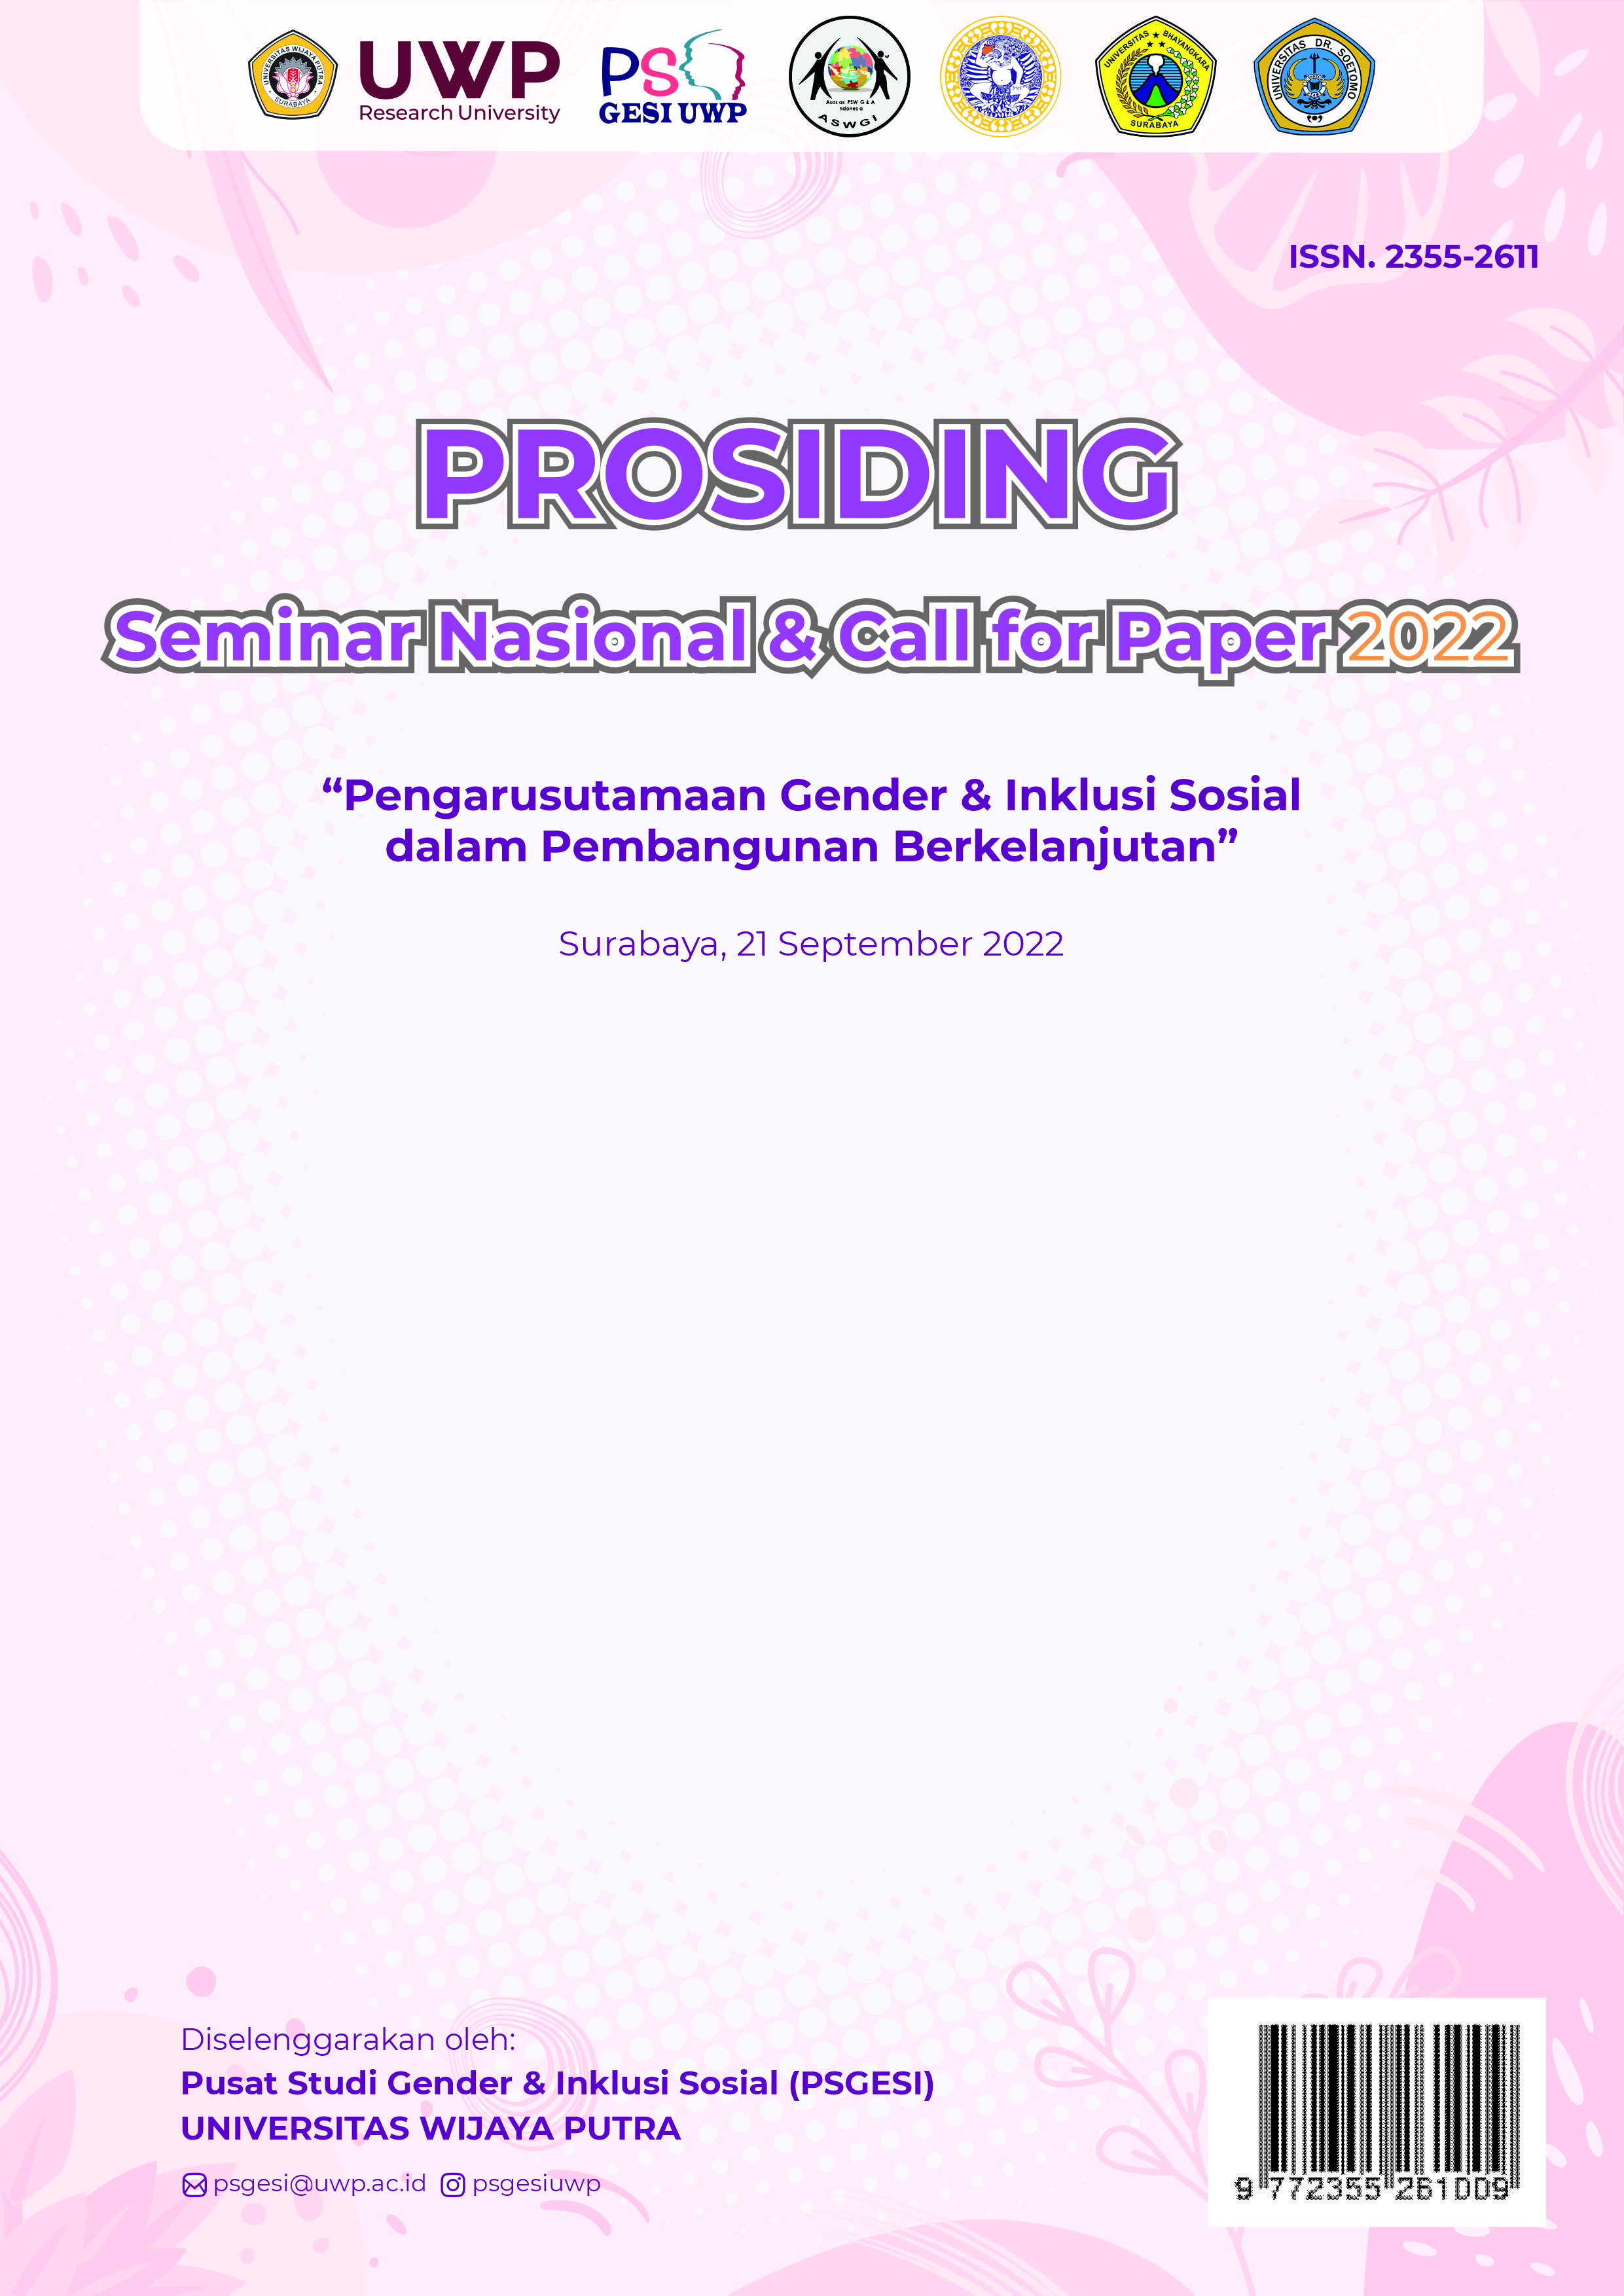 					Lihat Vol 9 No 01 (2022): Prosiding Seminar Nasional & Call for Paper PSGESI UWP, September 2022
				